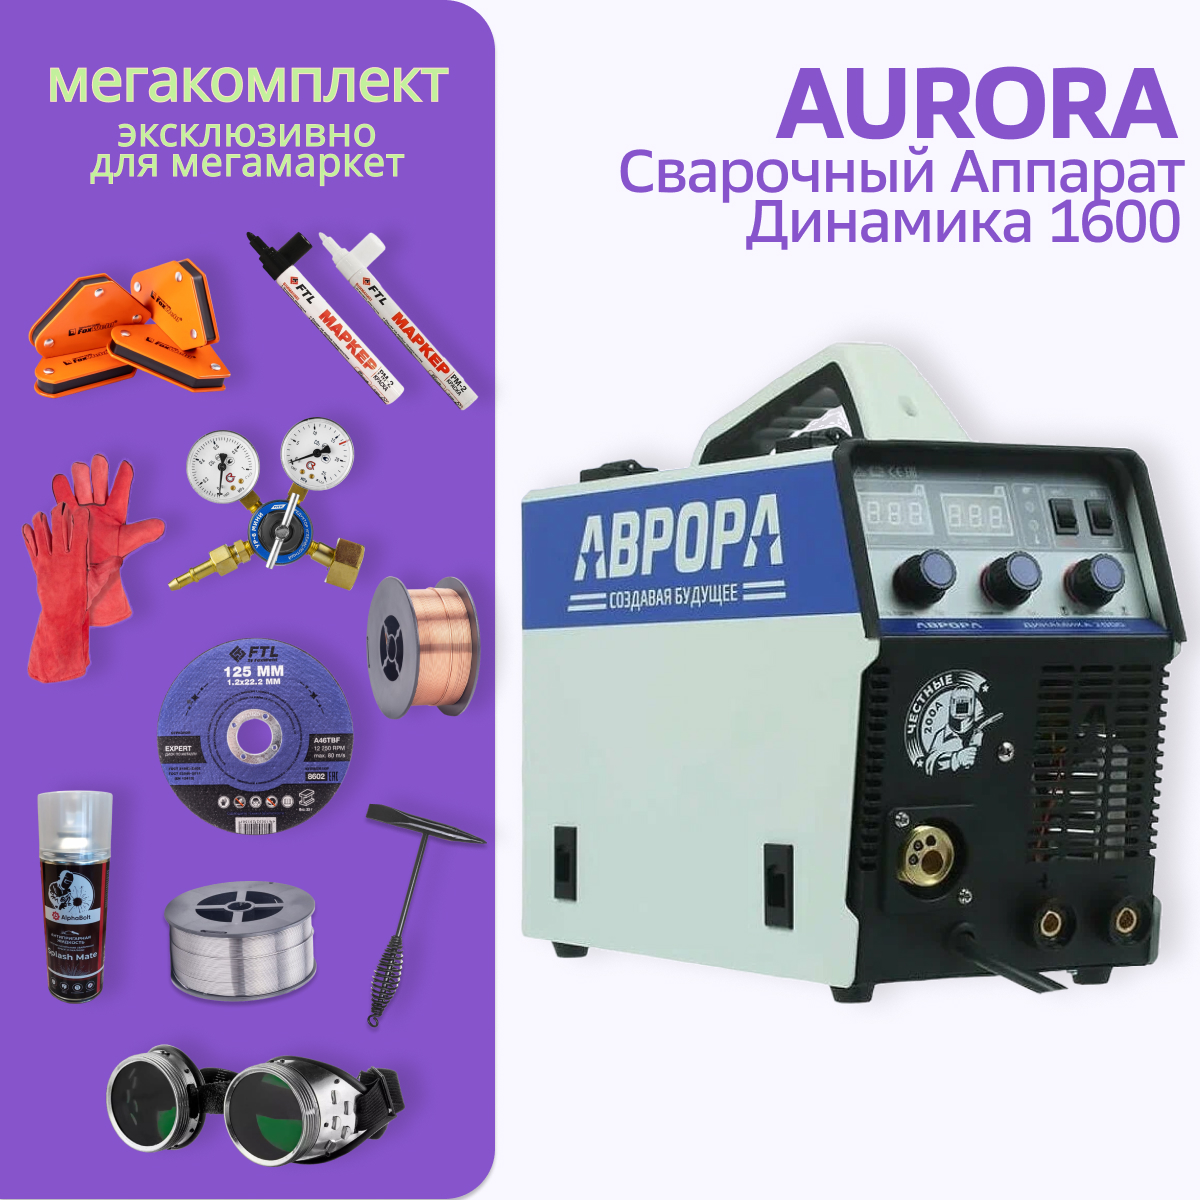 Сварочный полуавтомат АВРОРА Динамика 1600 МЕГА комплект - купить в Evium, цена на Мегамаркет